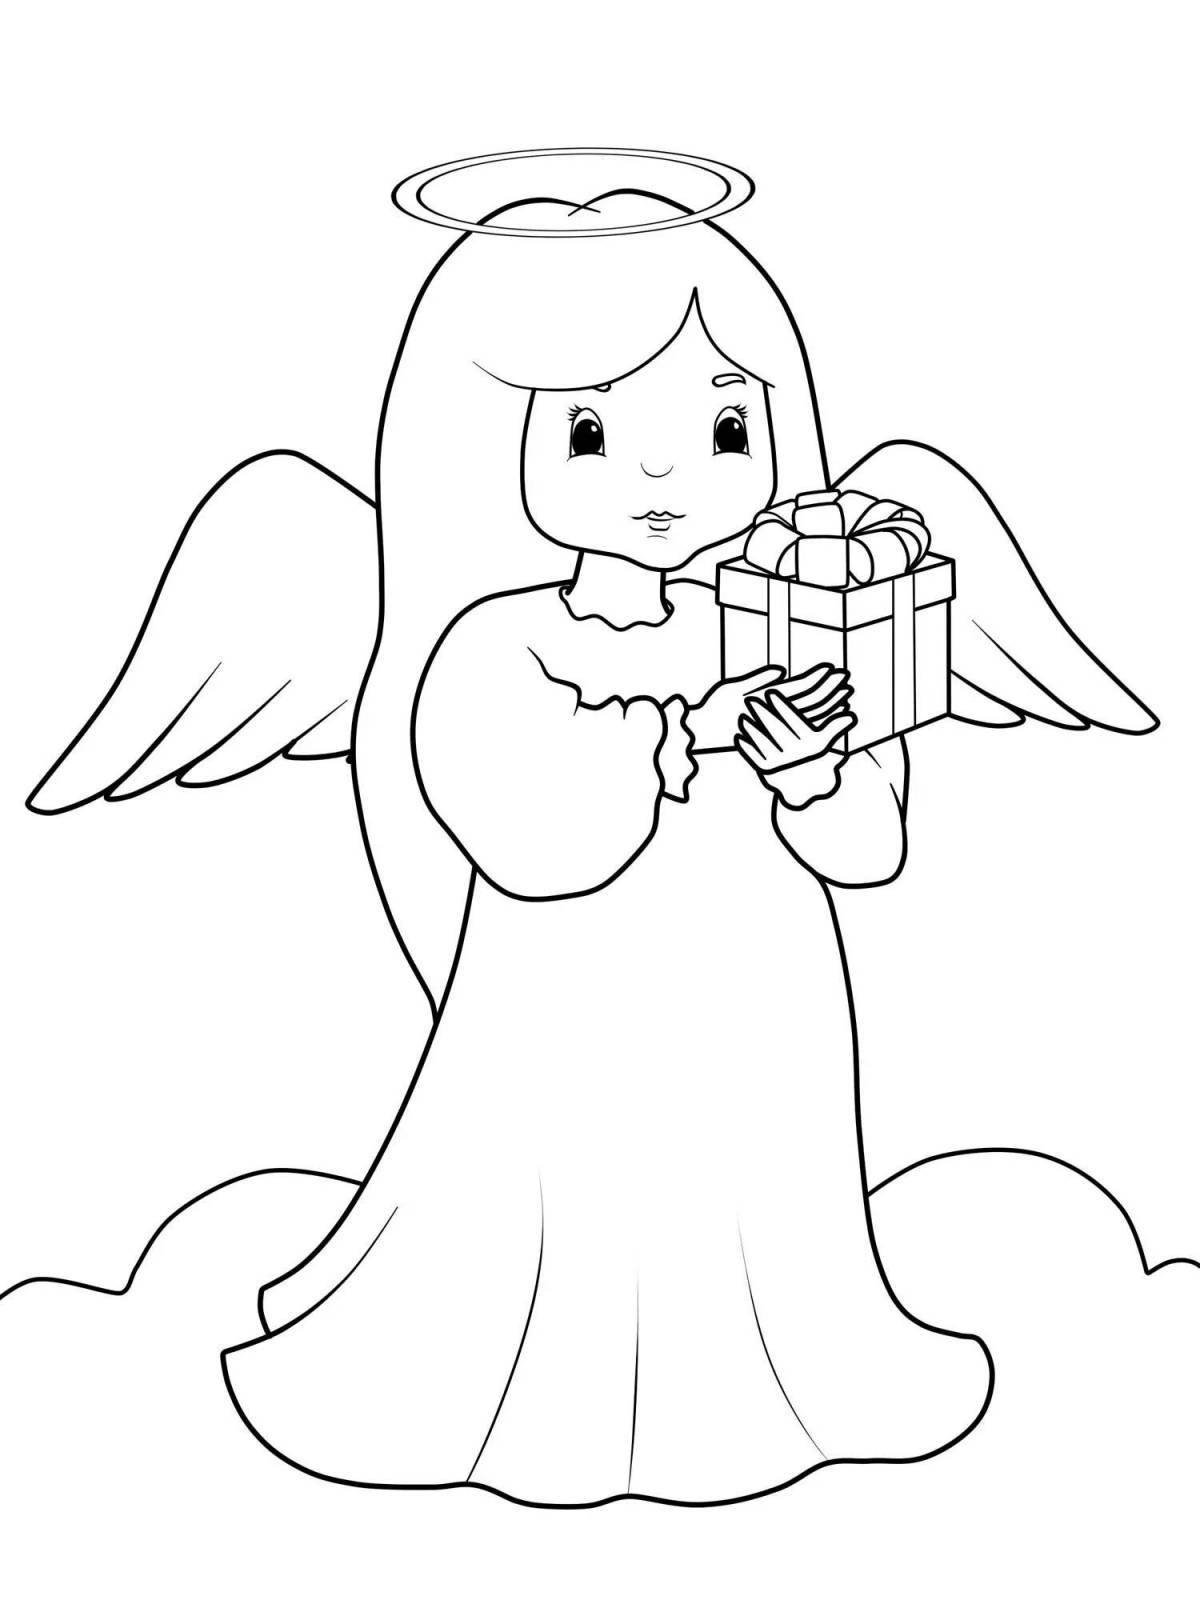 Божественная раскраска ангел для детей